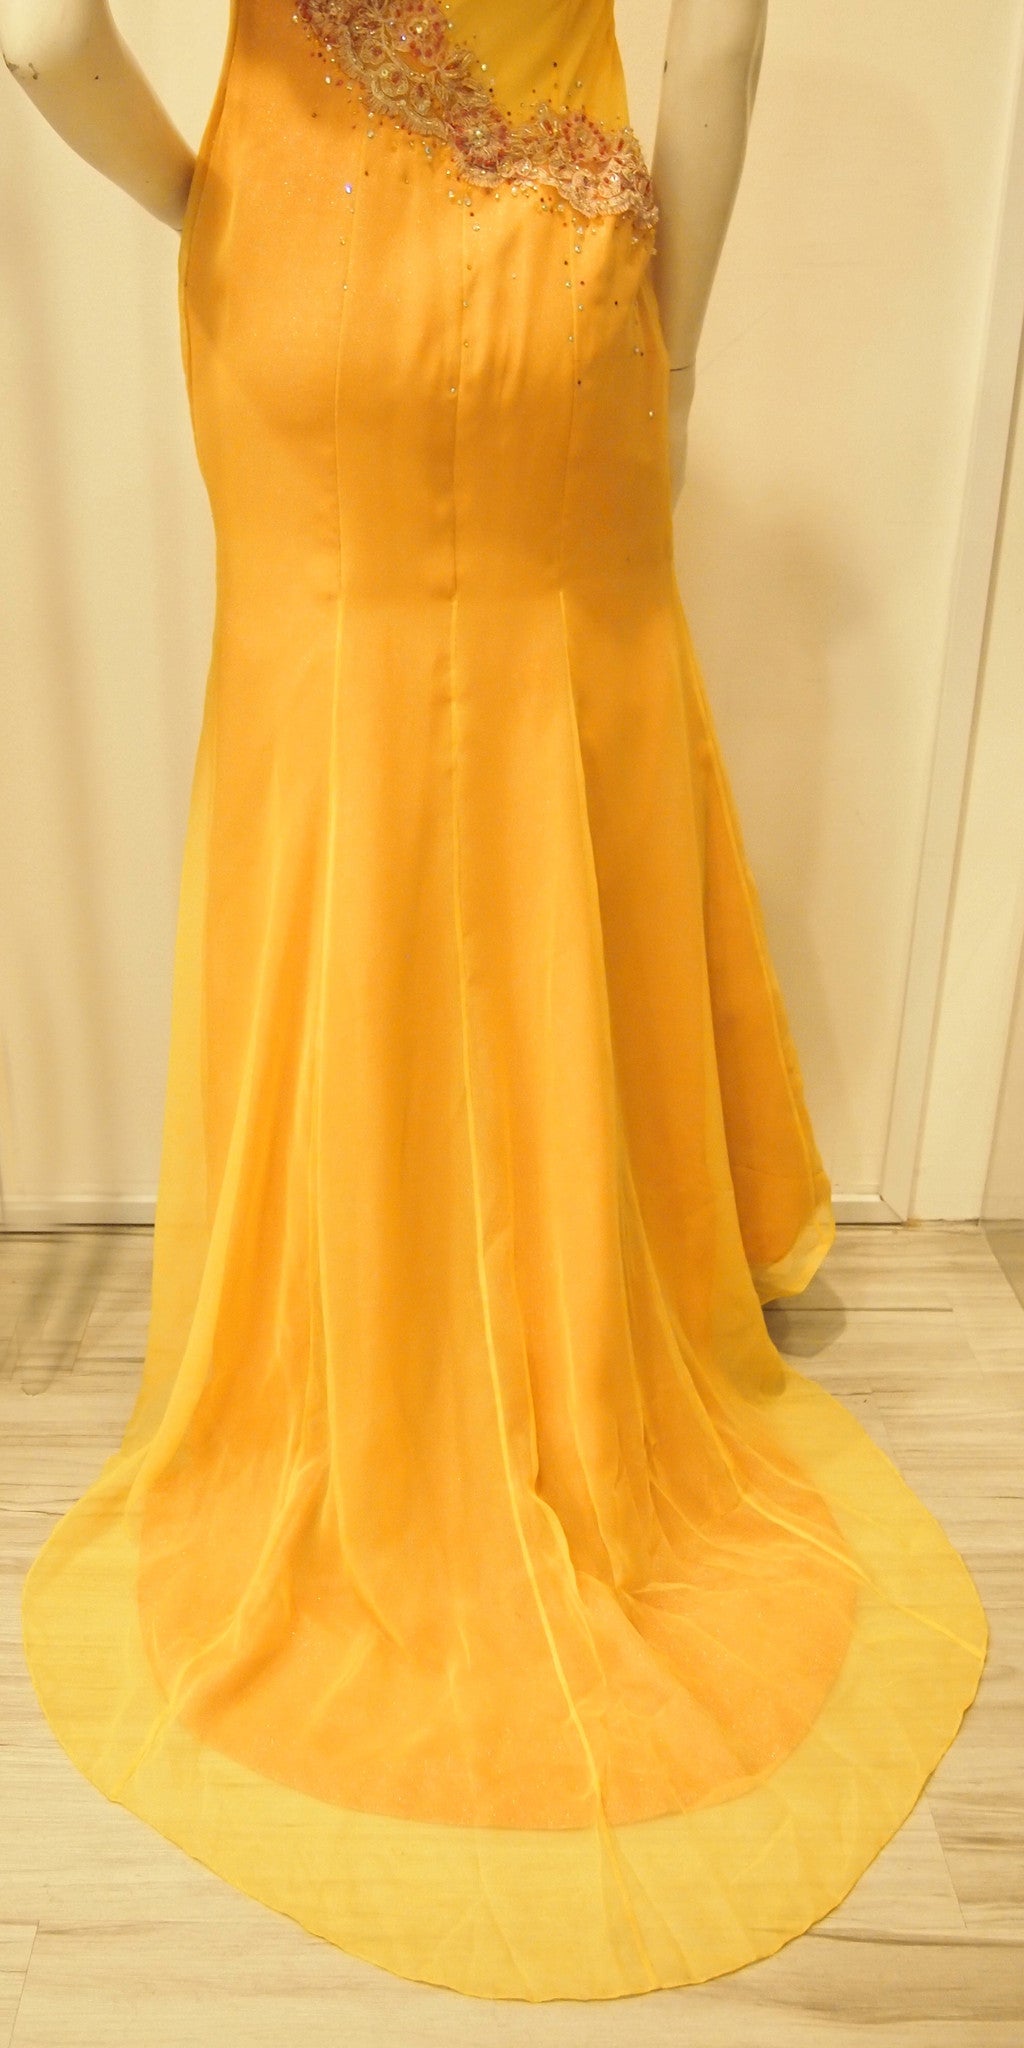 Scarlett O'hara Golden Vintage Evening Dress